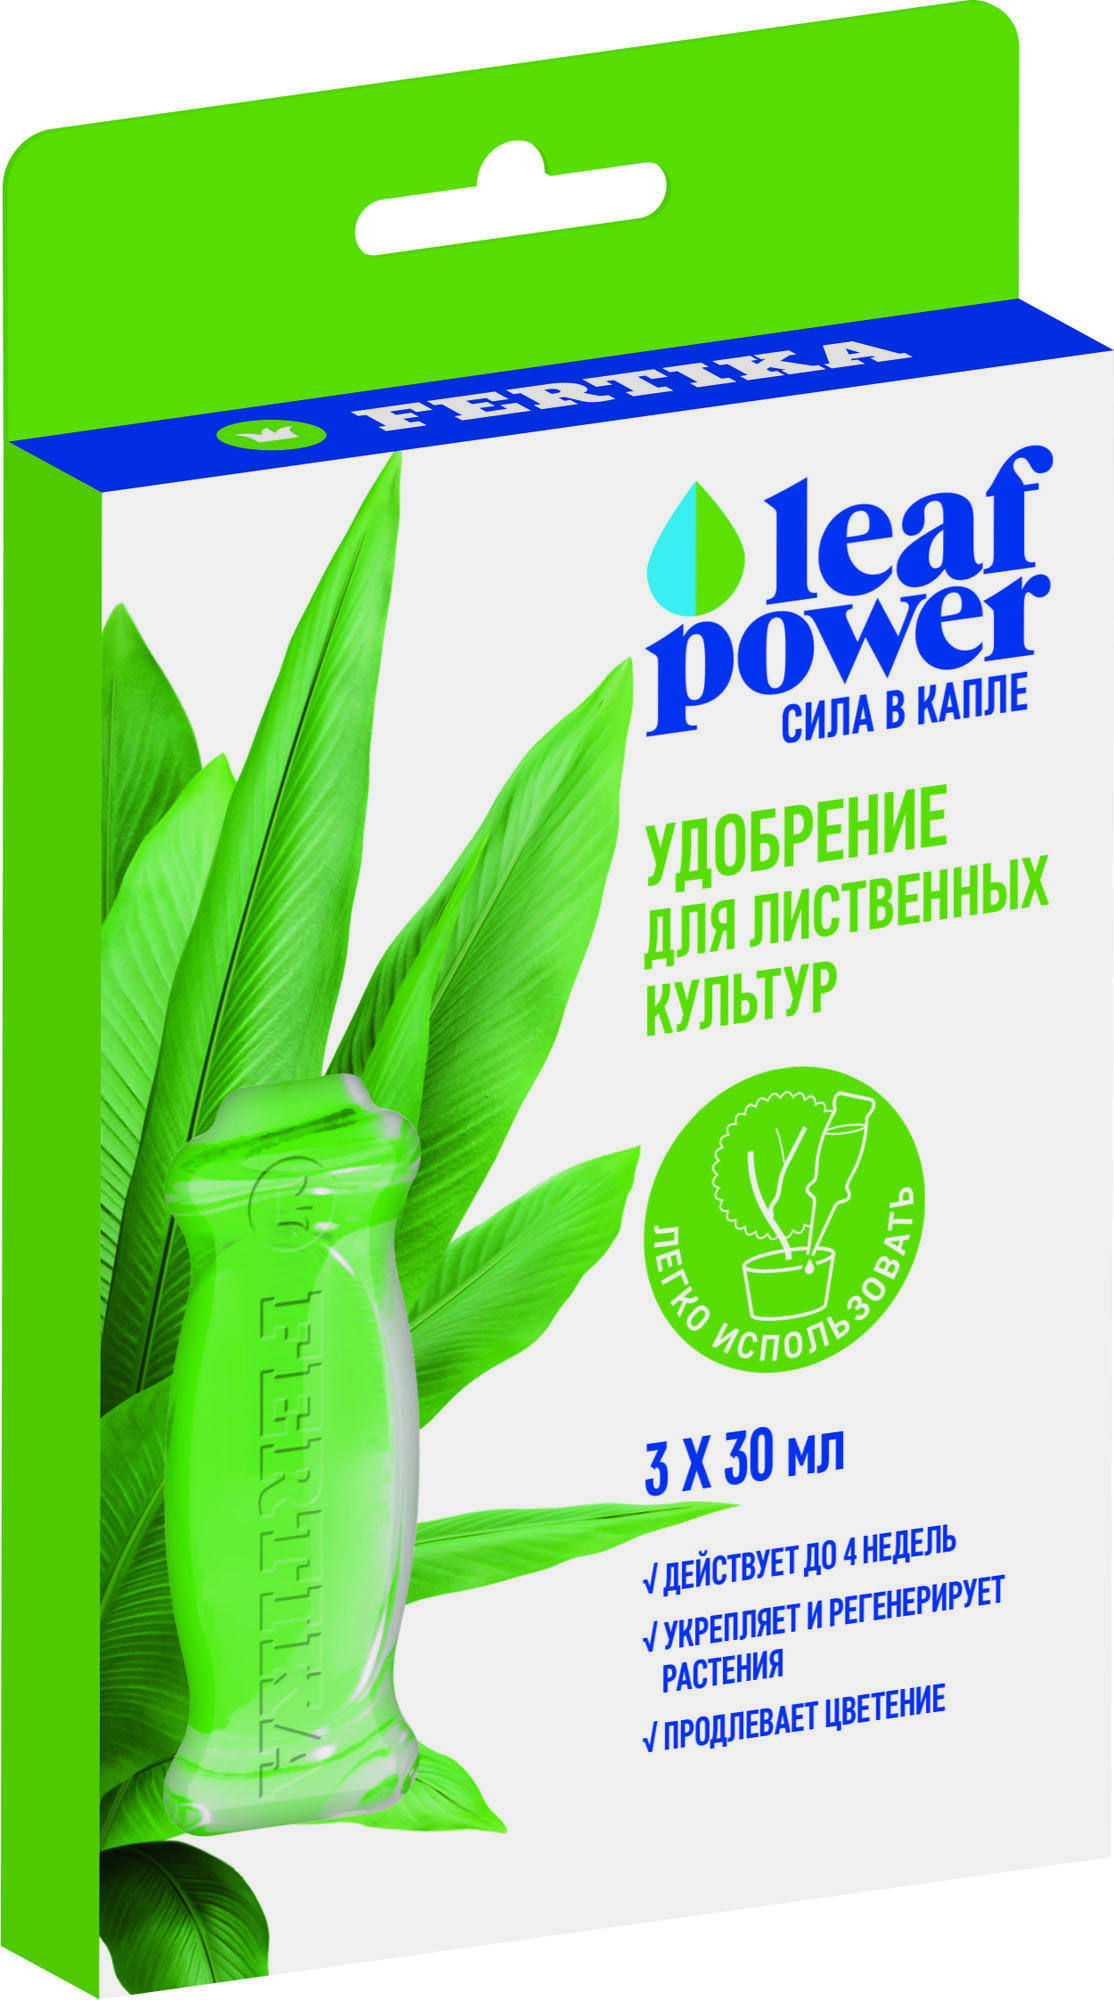 Leaf power. Powerful leafe.